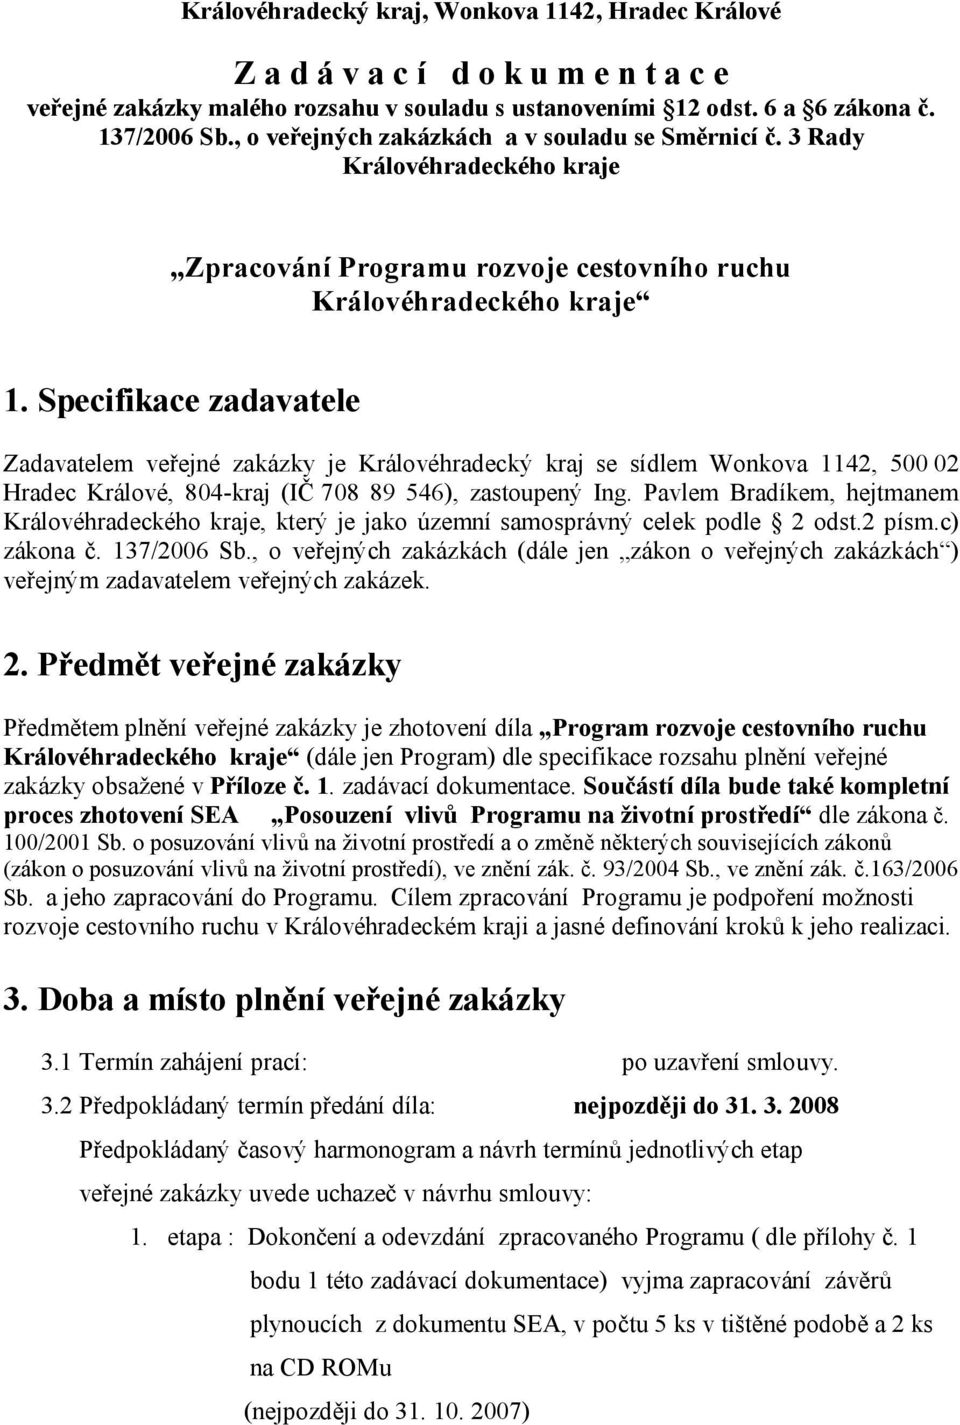 Specifikace zadavatele Zadavatelem veřejné zakázky je Královéhradecký kraj se sídlem Wonkova 1142, 500 02 Hradec Králové, 804-kraj (IČ 708 89 546), zastoupený Ing.